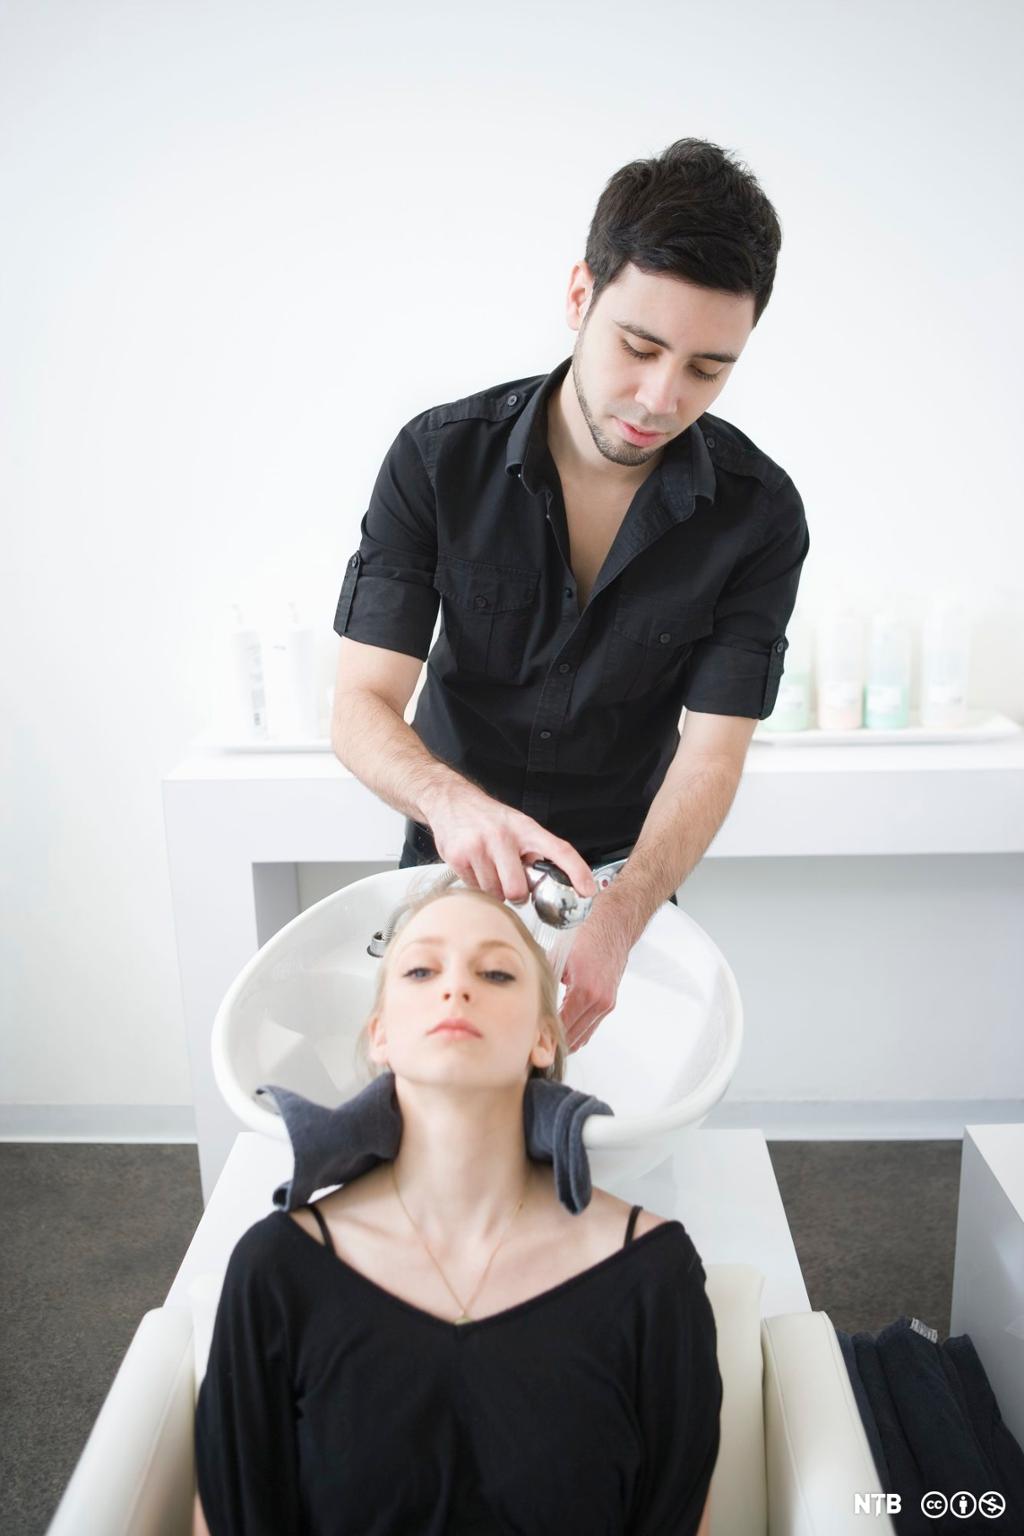 Mannleg frisør vaskar håret på ein kunde. Foto.